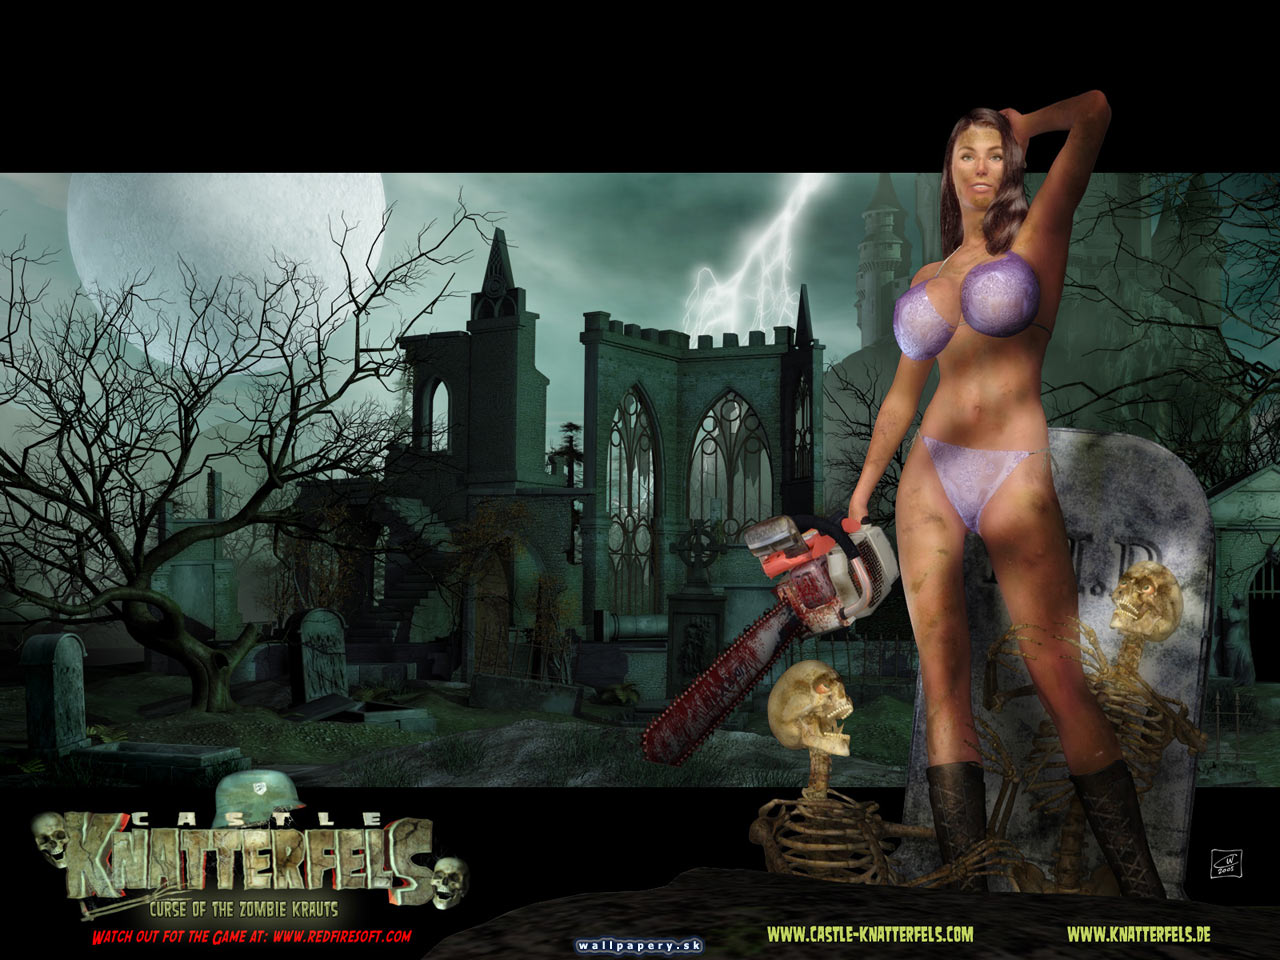 Castle Knatterfels: Curse of the Zombie Krauts - wallpaper 4